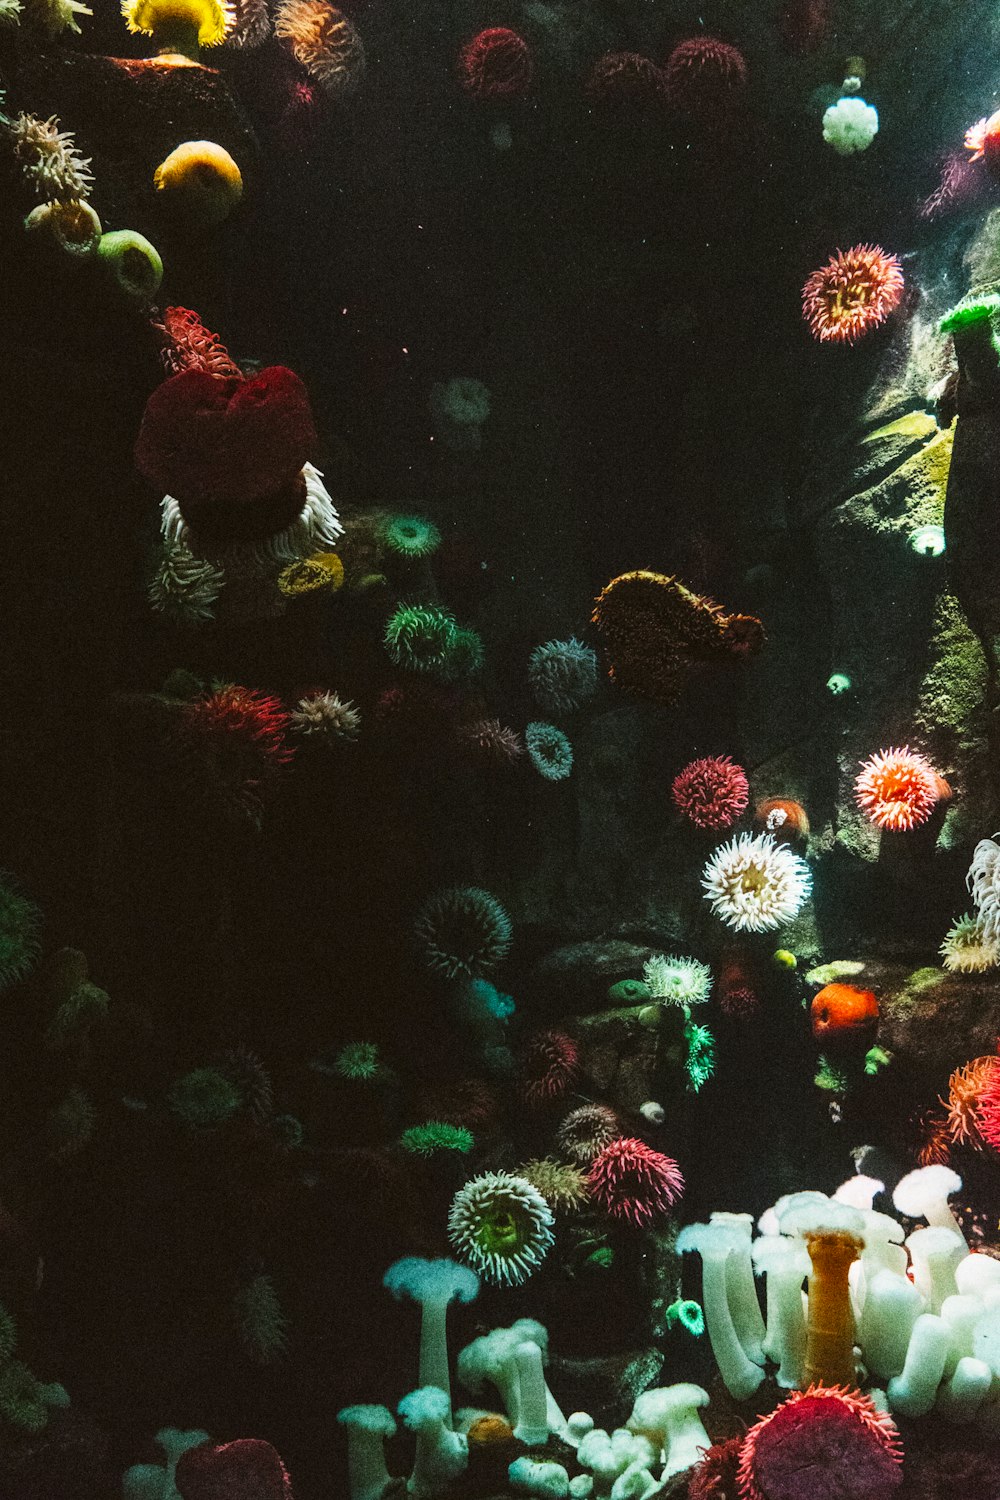 Photographie de coraux marins